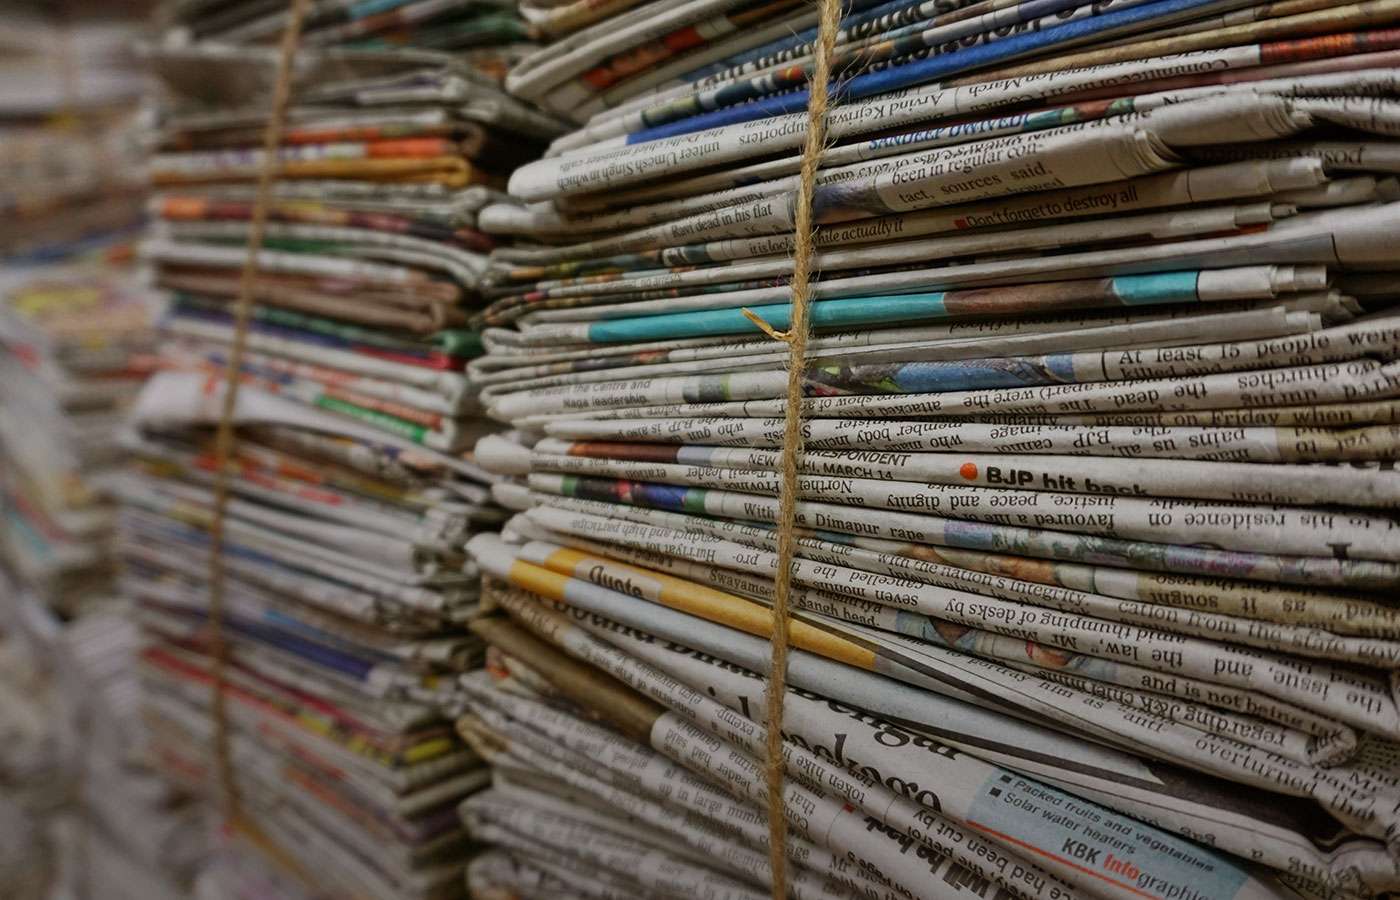 Recomandările redacției: Viitorul jurnalismului este incert